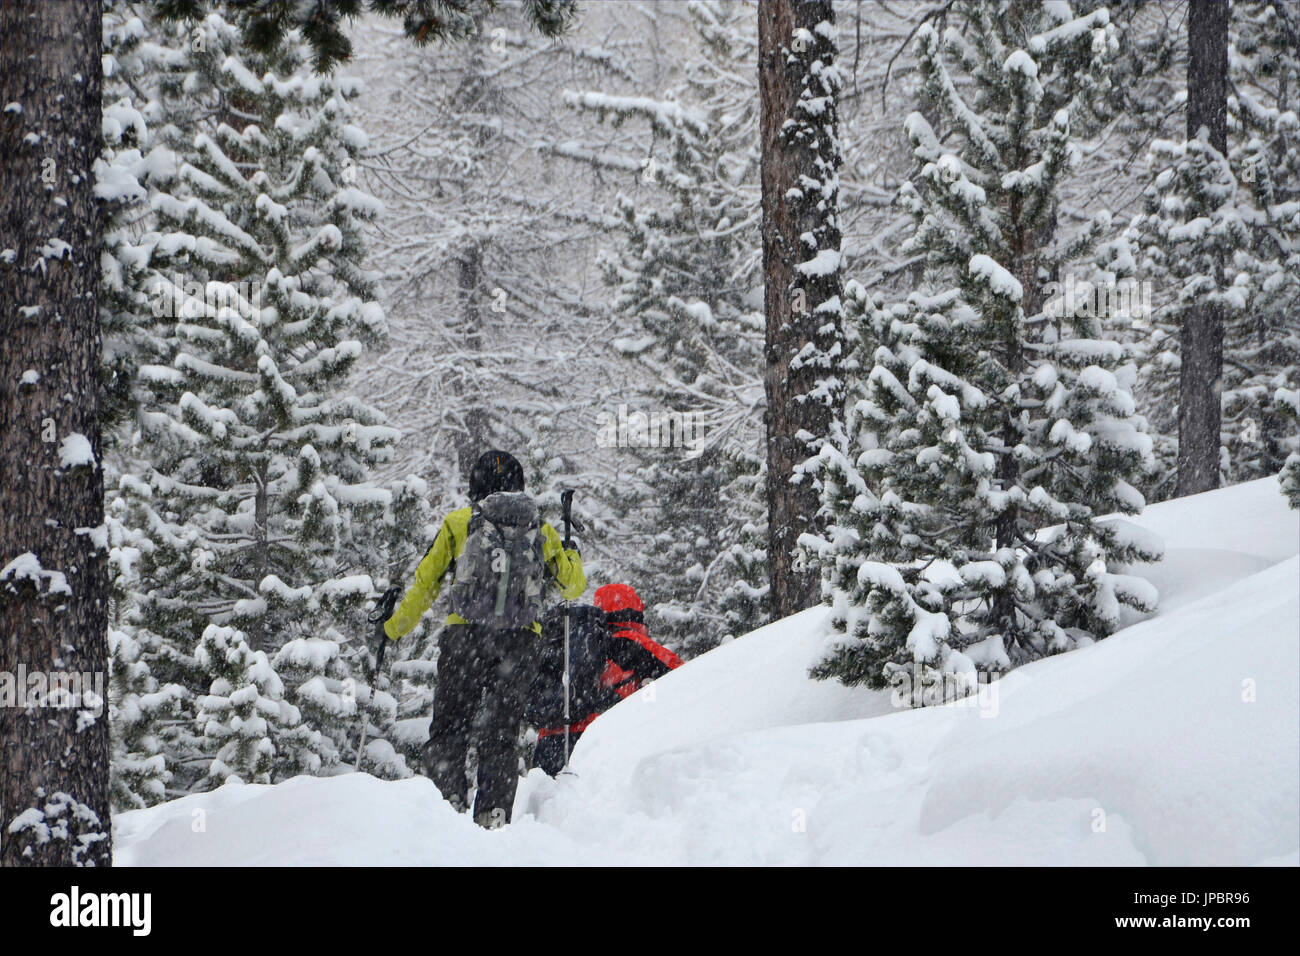 (Ski Alpin) spazieren im Wald, während schneit, Nevache, Frankreich Stockfoto